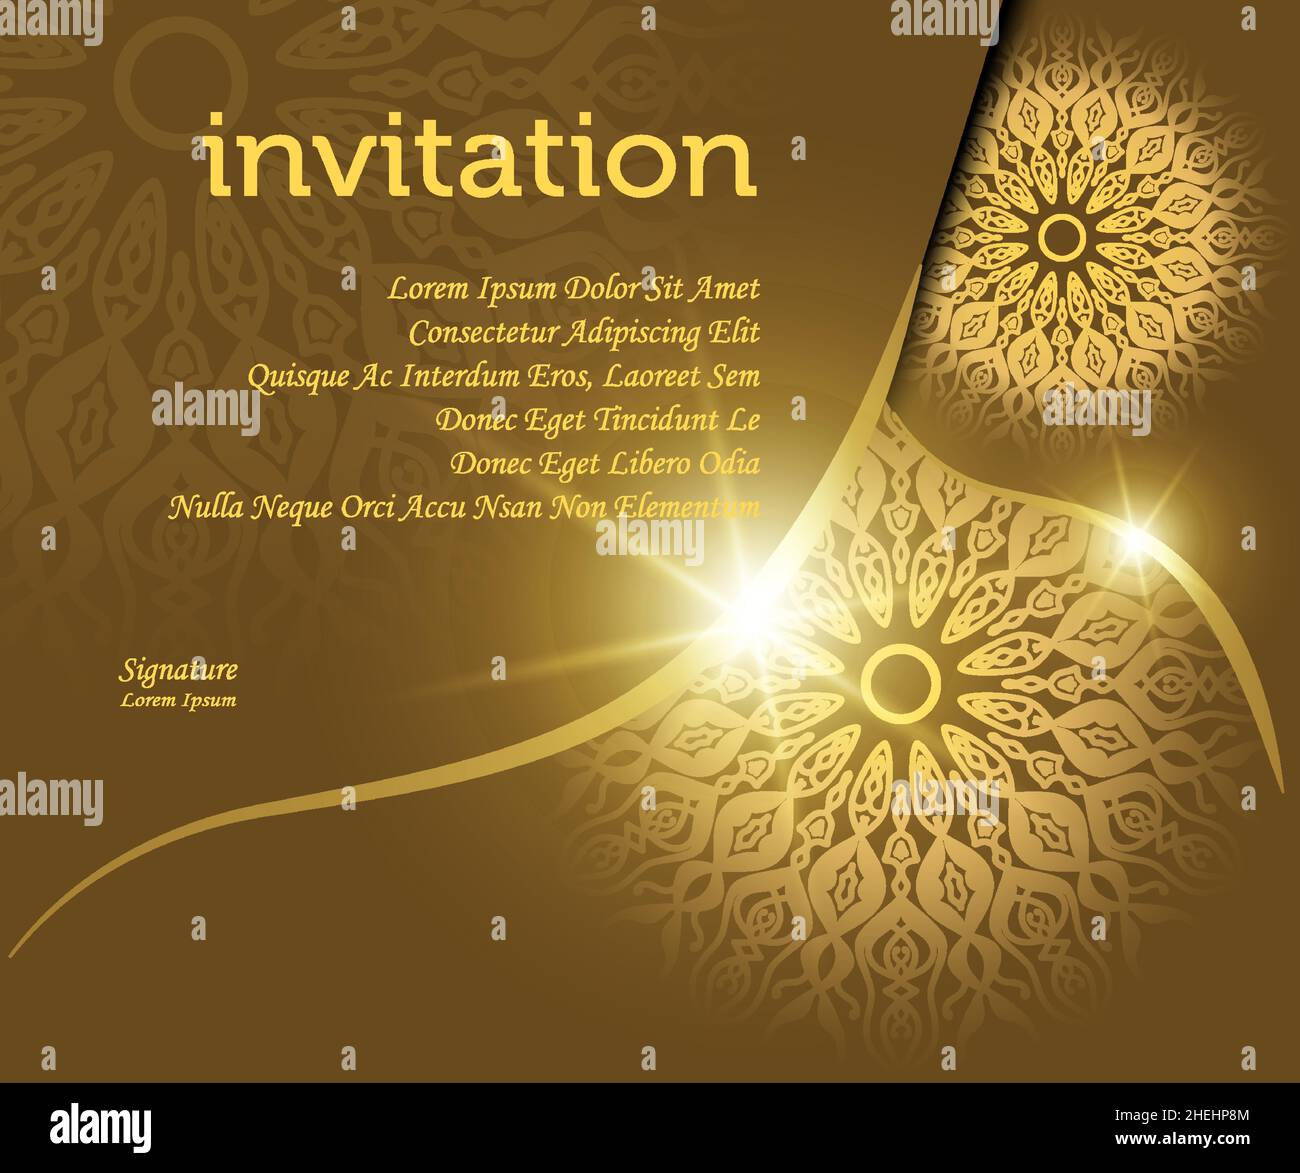 modèle d'invitation de fond mandala, avec effet de lumière de couleur dorée look luxe, idéal pour le matériel de conception d'invitation, carte de vœux, promotion de vente Illustration de Vecteur